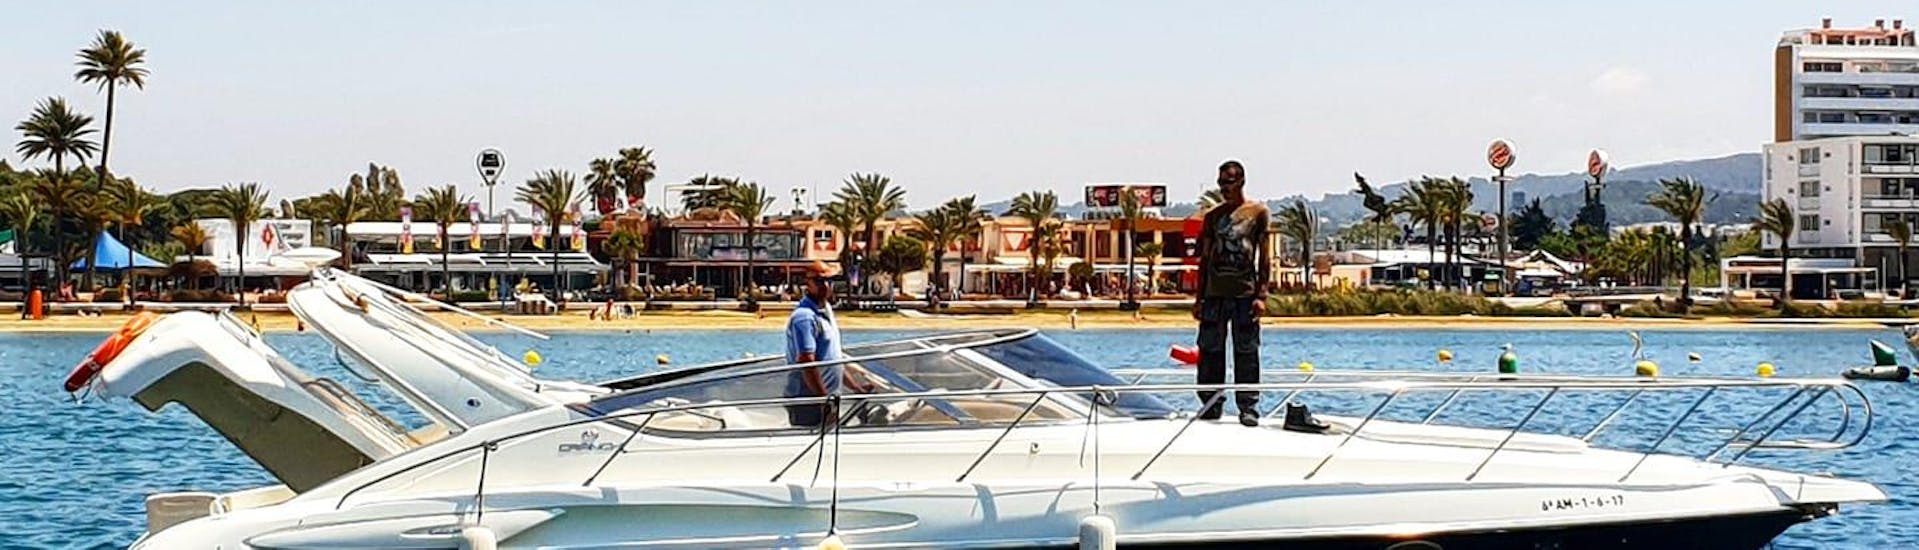 Une Balade privée en bateau à moteur autour d'Ibiza